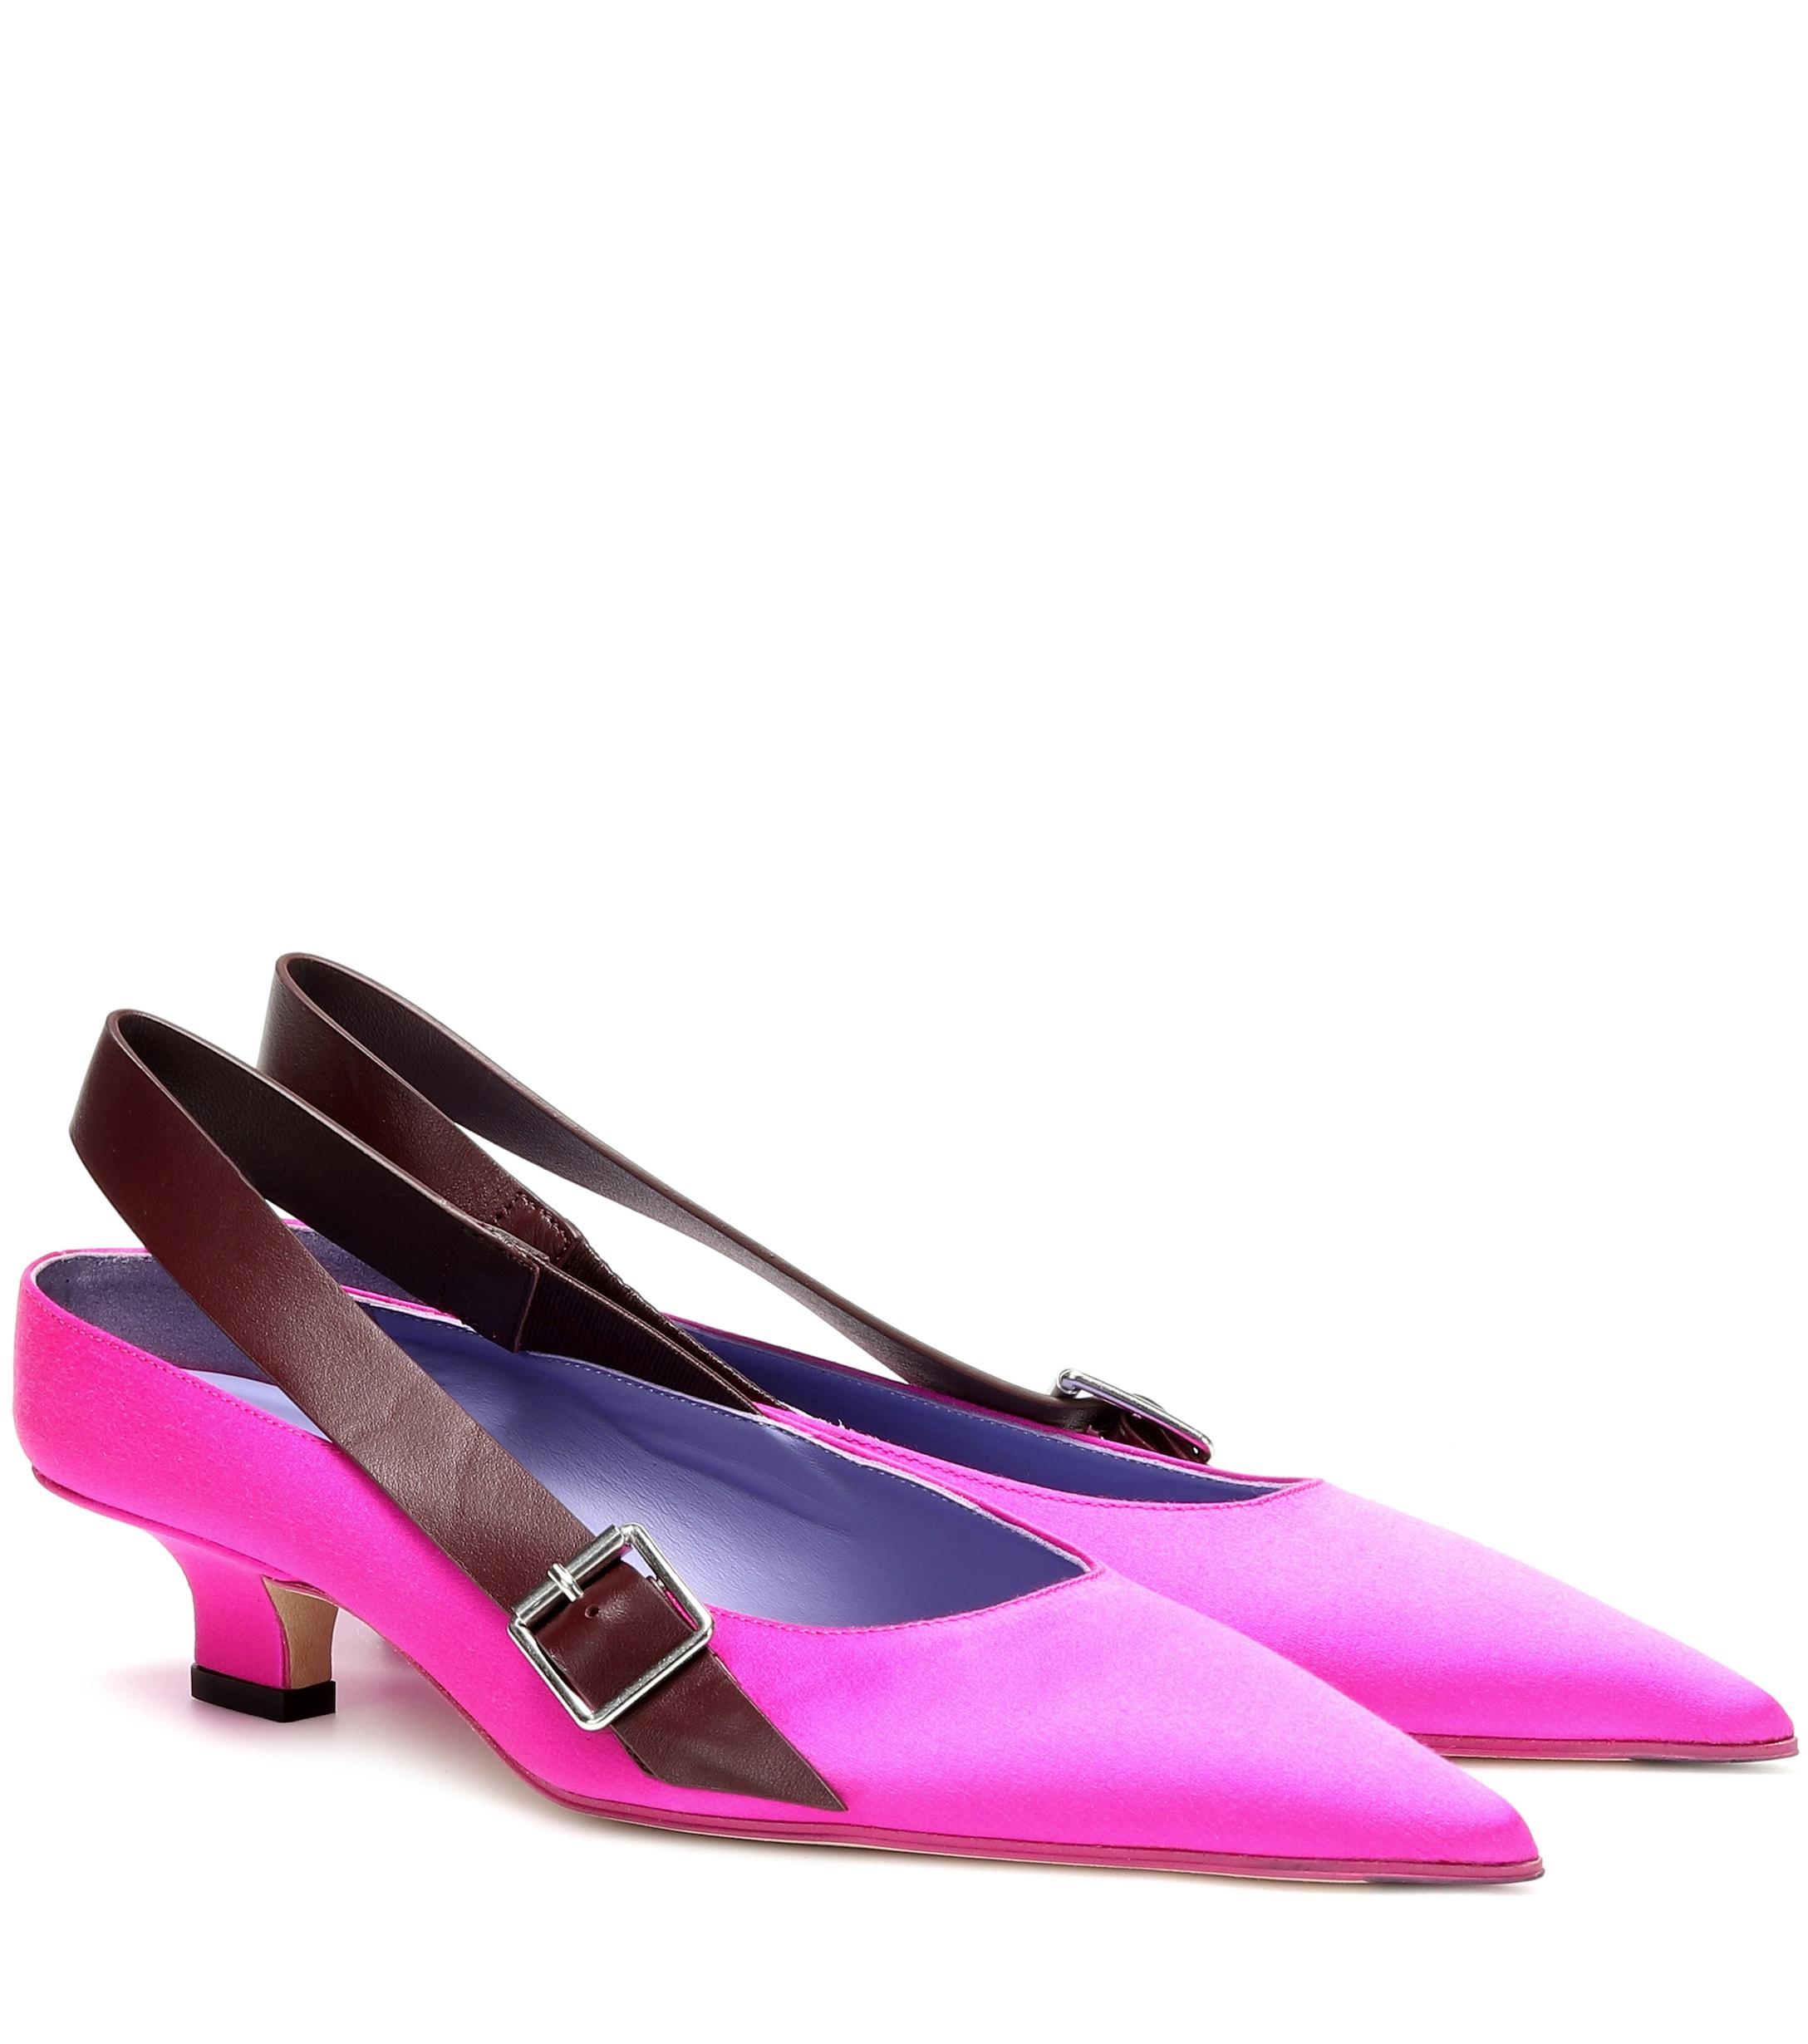 Victoria Beckham Satin Low Heel Pumps in Pink - Save 13% - Lyst